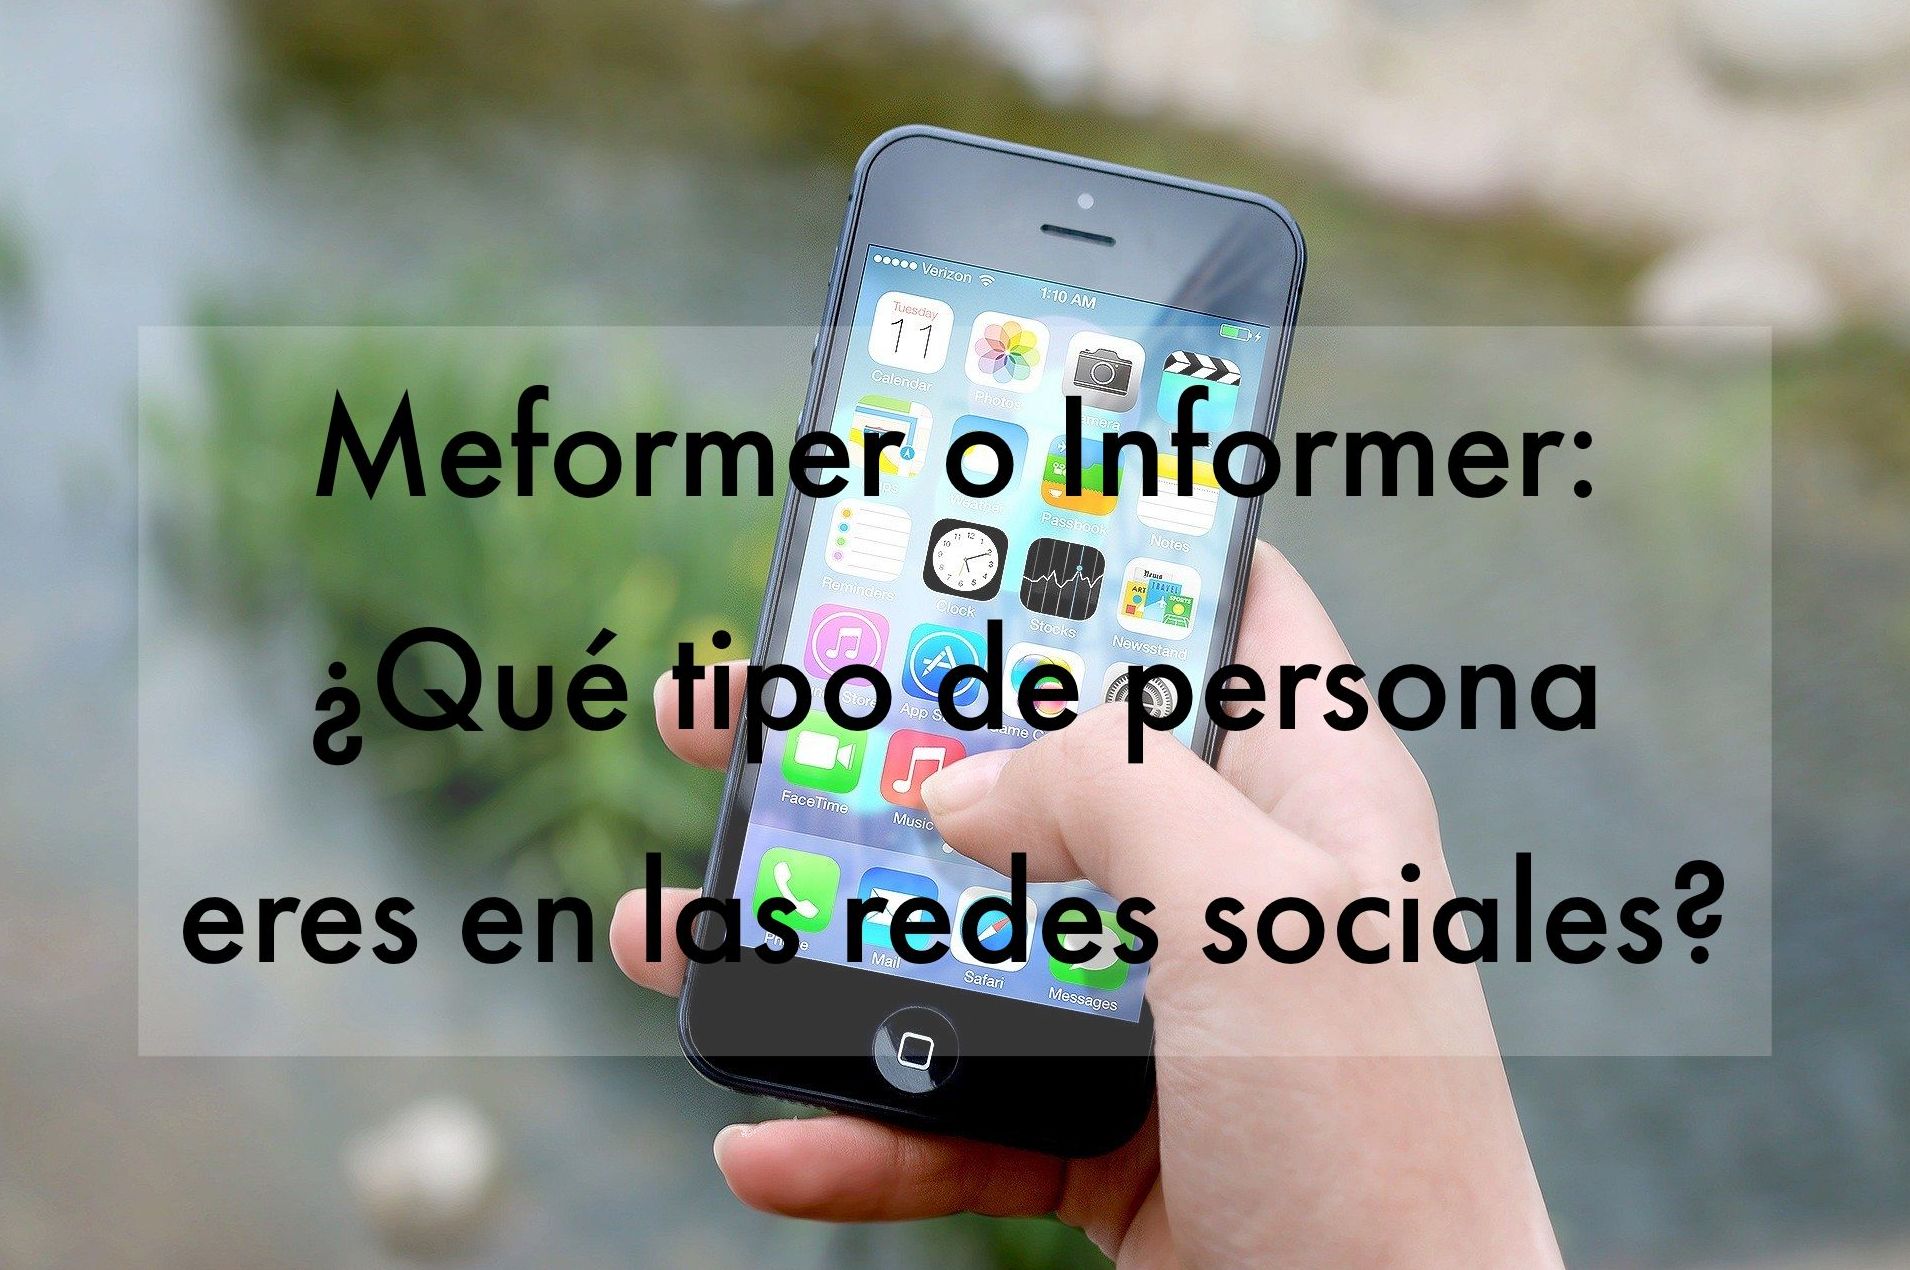 Meformer o Informer: ¿Qué tipo de persona eres en las redes sociales? 